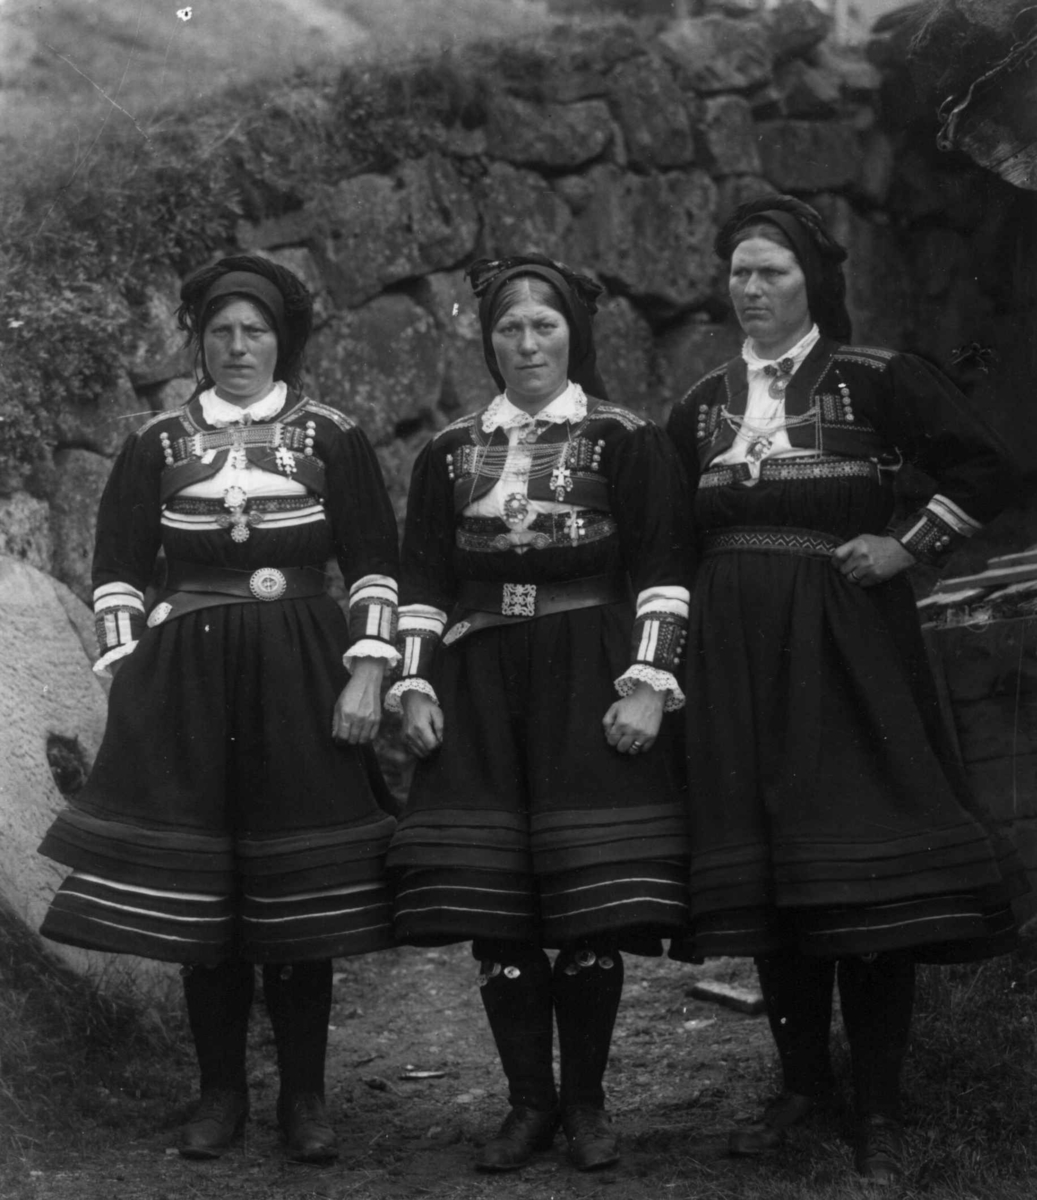 Kvinnedrakt, gruppeportrett, Valle, Setesdal, Aust-Agder, antatt 1924.
Fra "De Schreinerske samlinger" (skal oppgis).